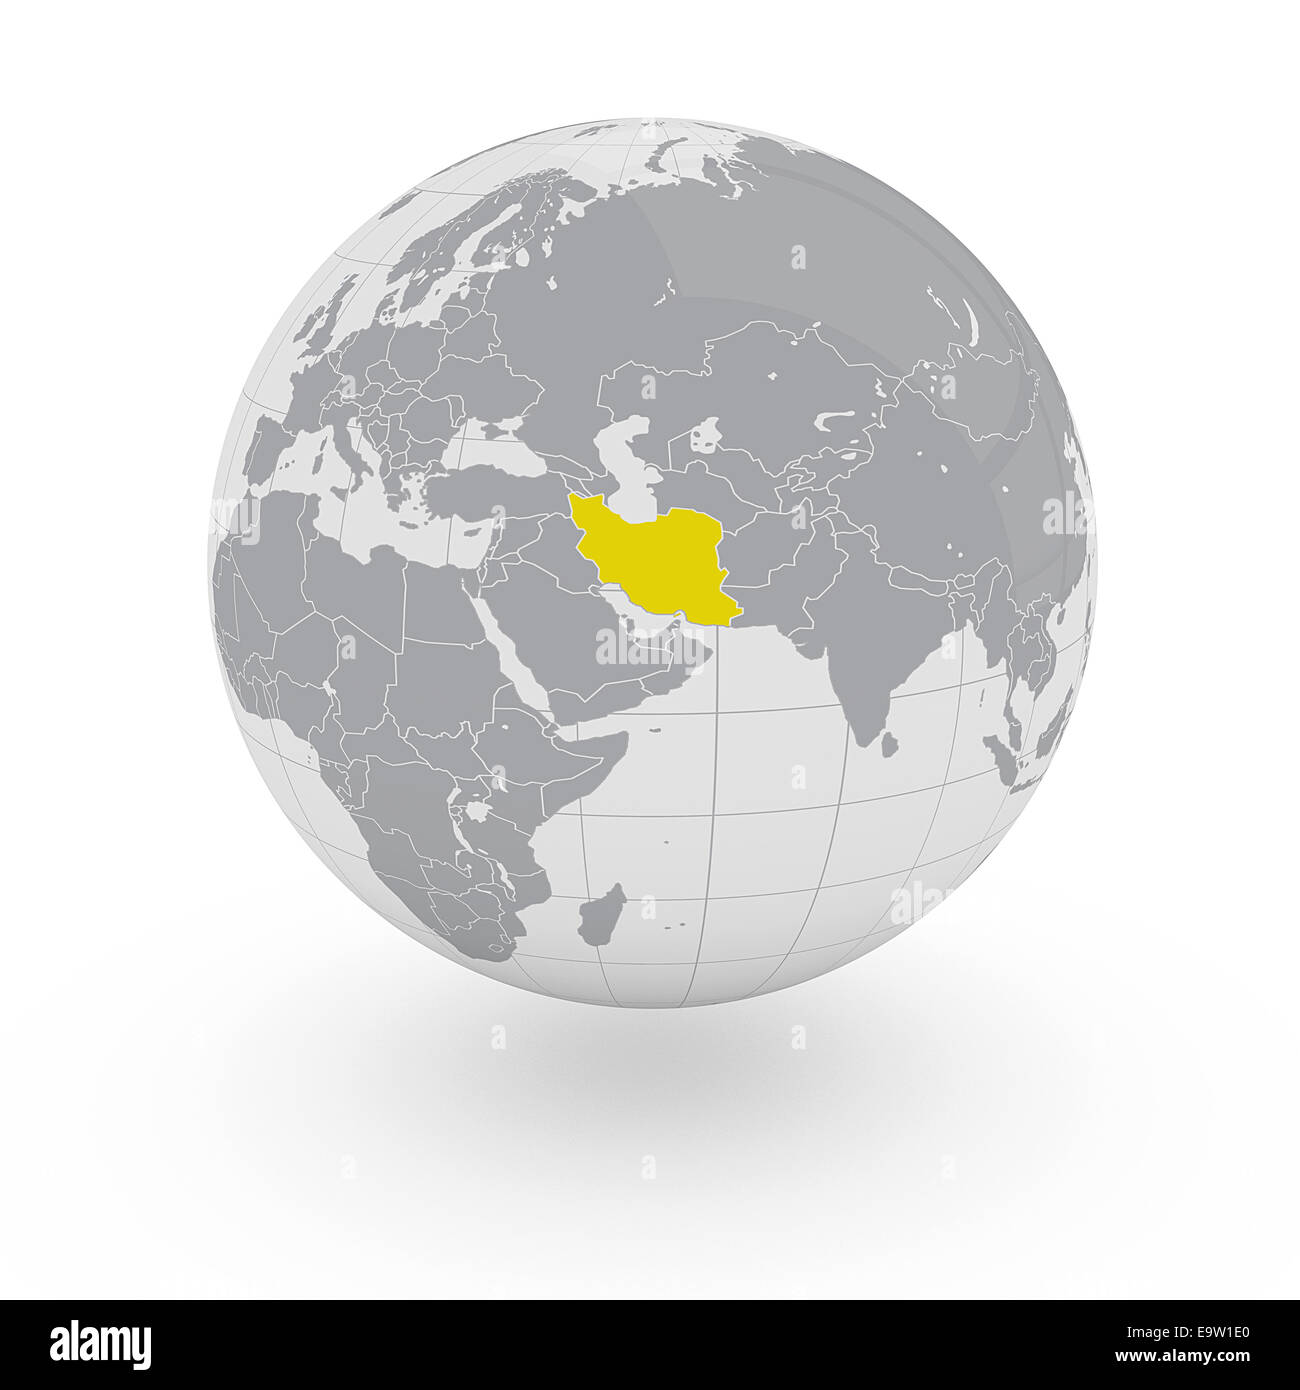 Iran on globe isolated on white background Stock Photo